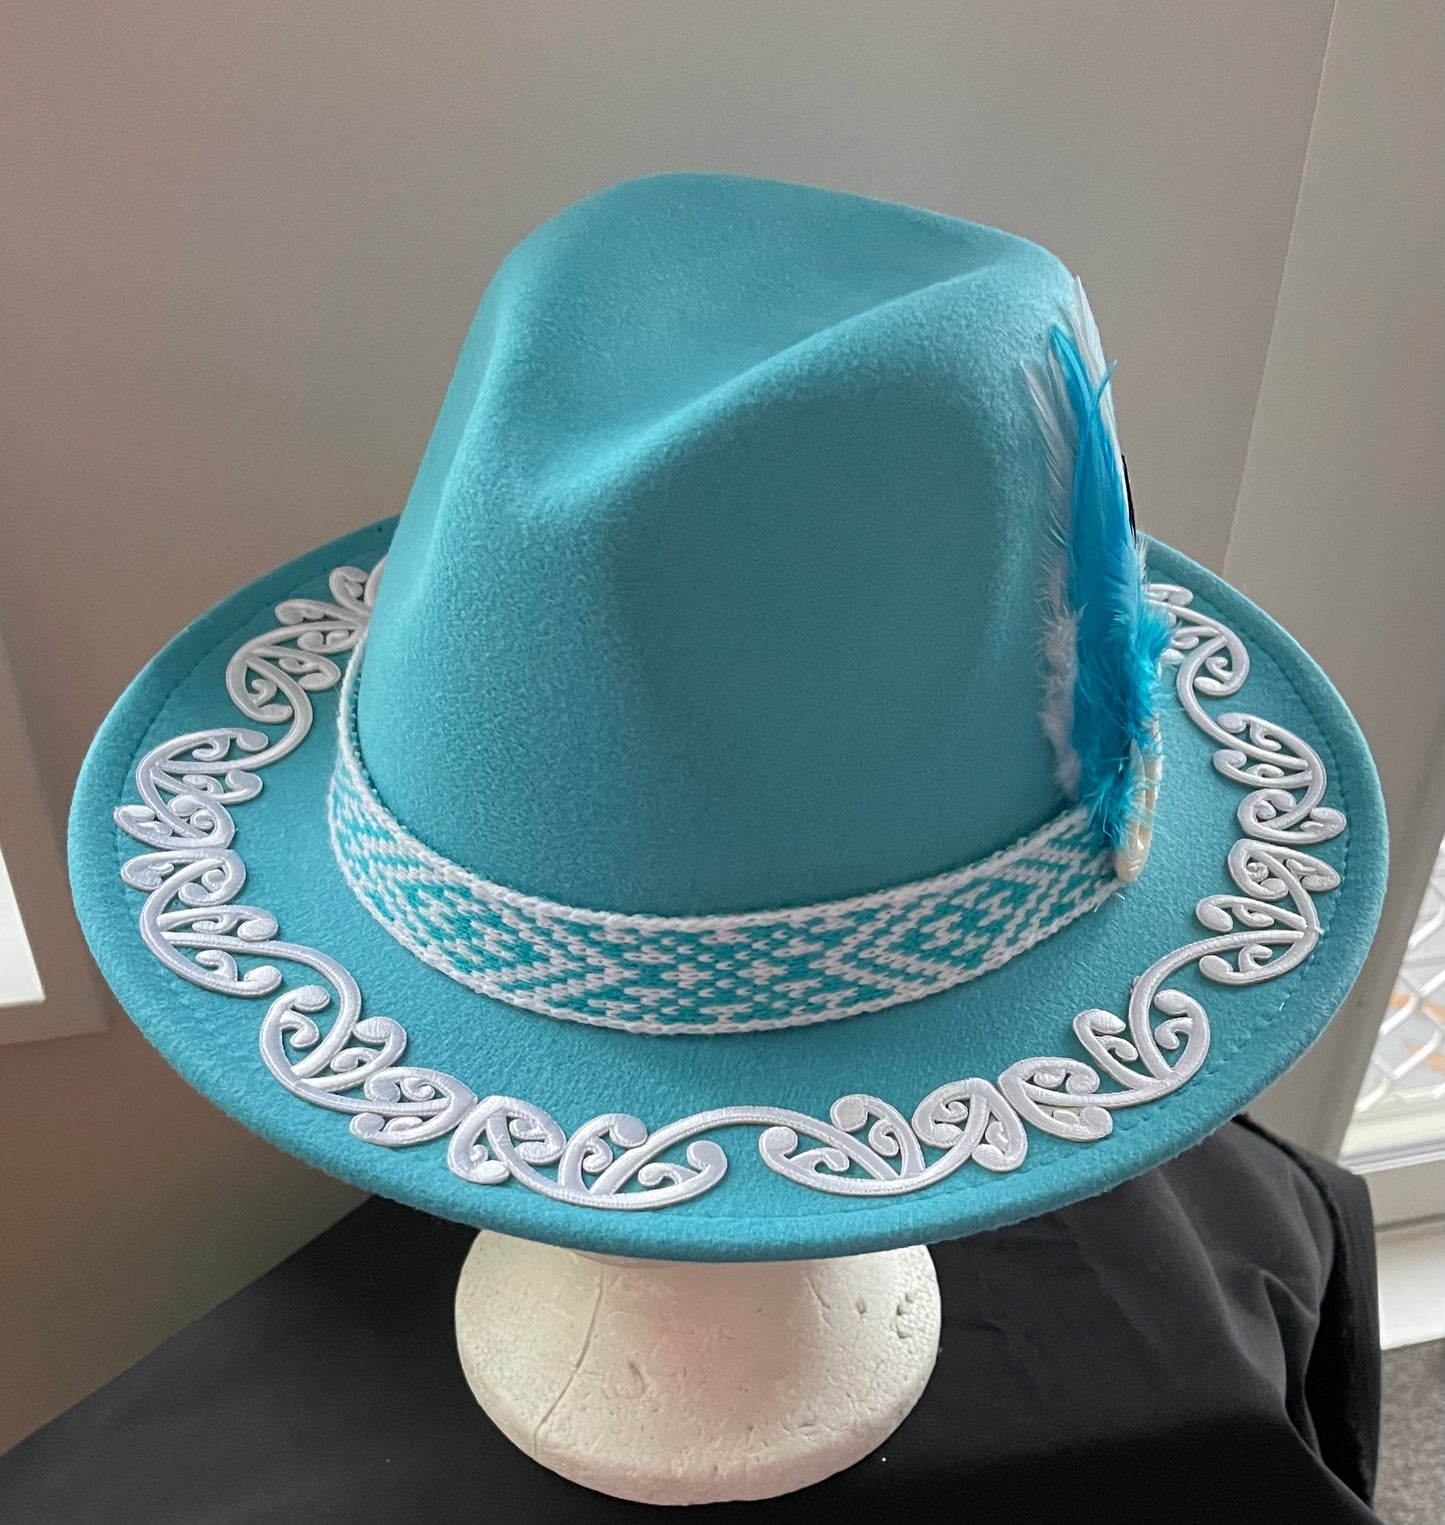 Potae - Turquoise Fedora Felt Hat